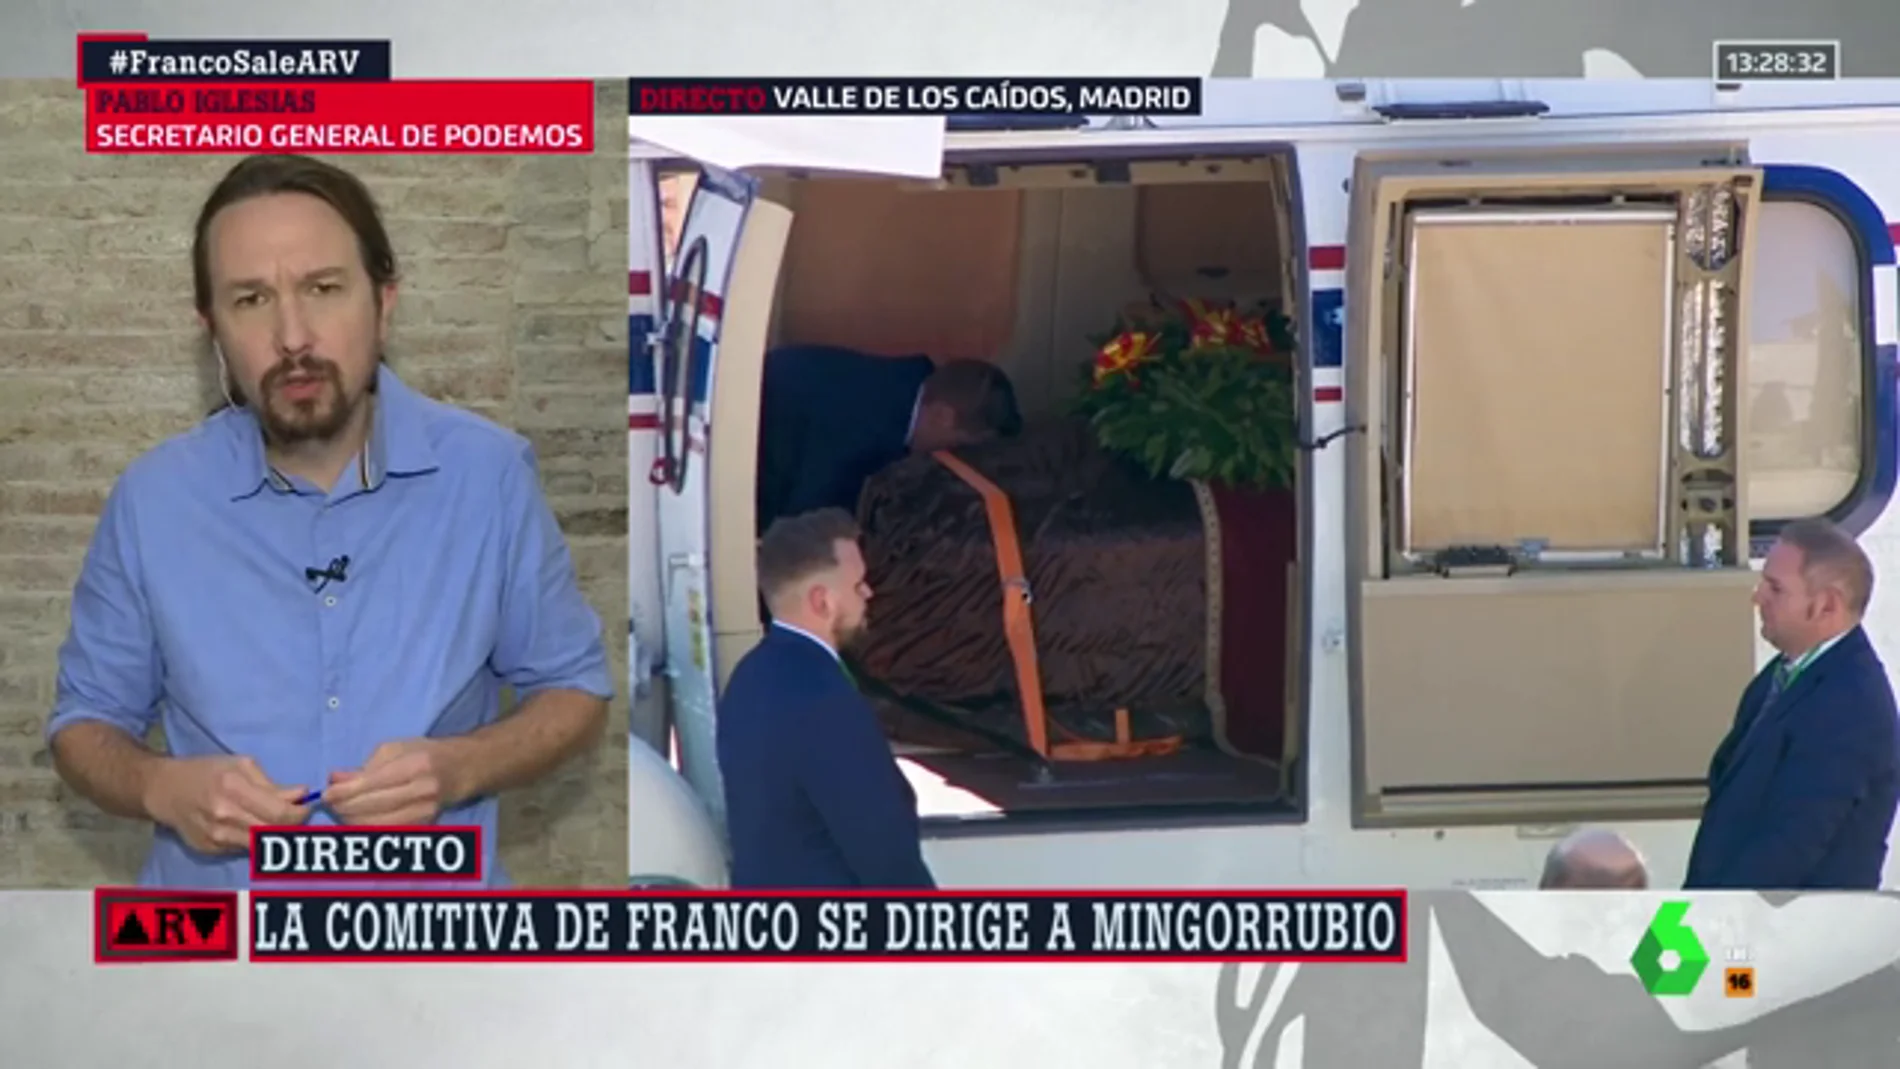 Pablo Iglesias: "Está bien que la momia deje el Valle de los Caídos, pero los restos de Franco no están en ese ataúd"